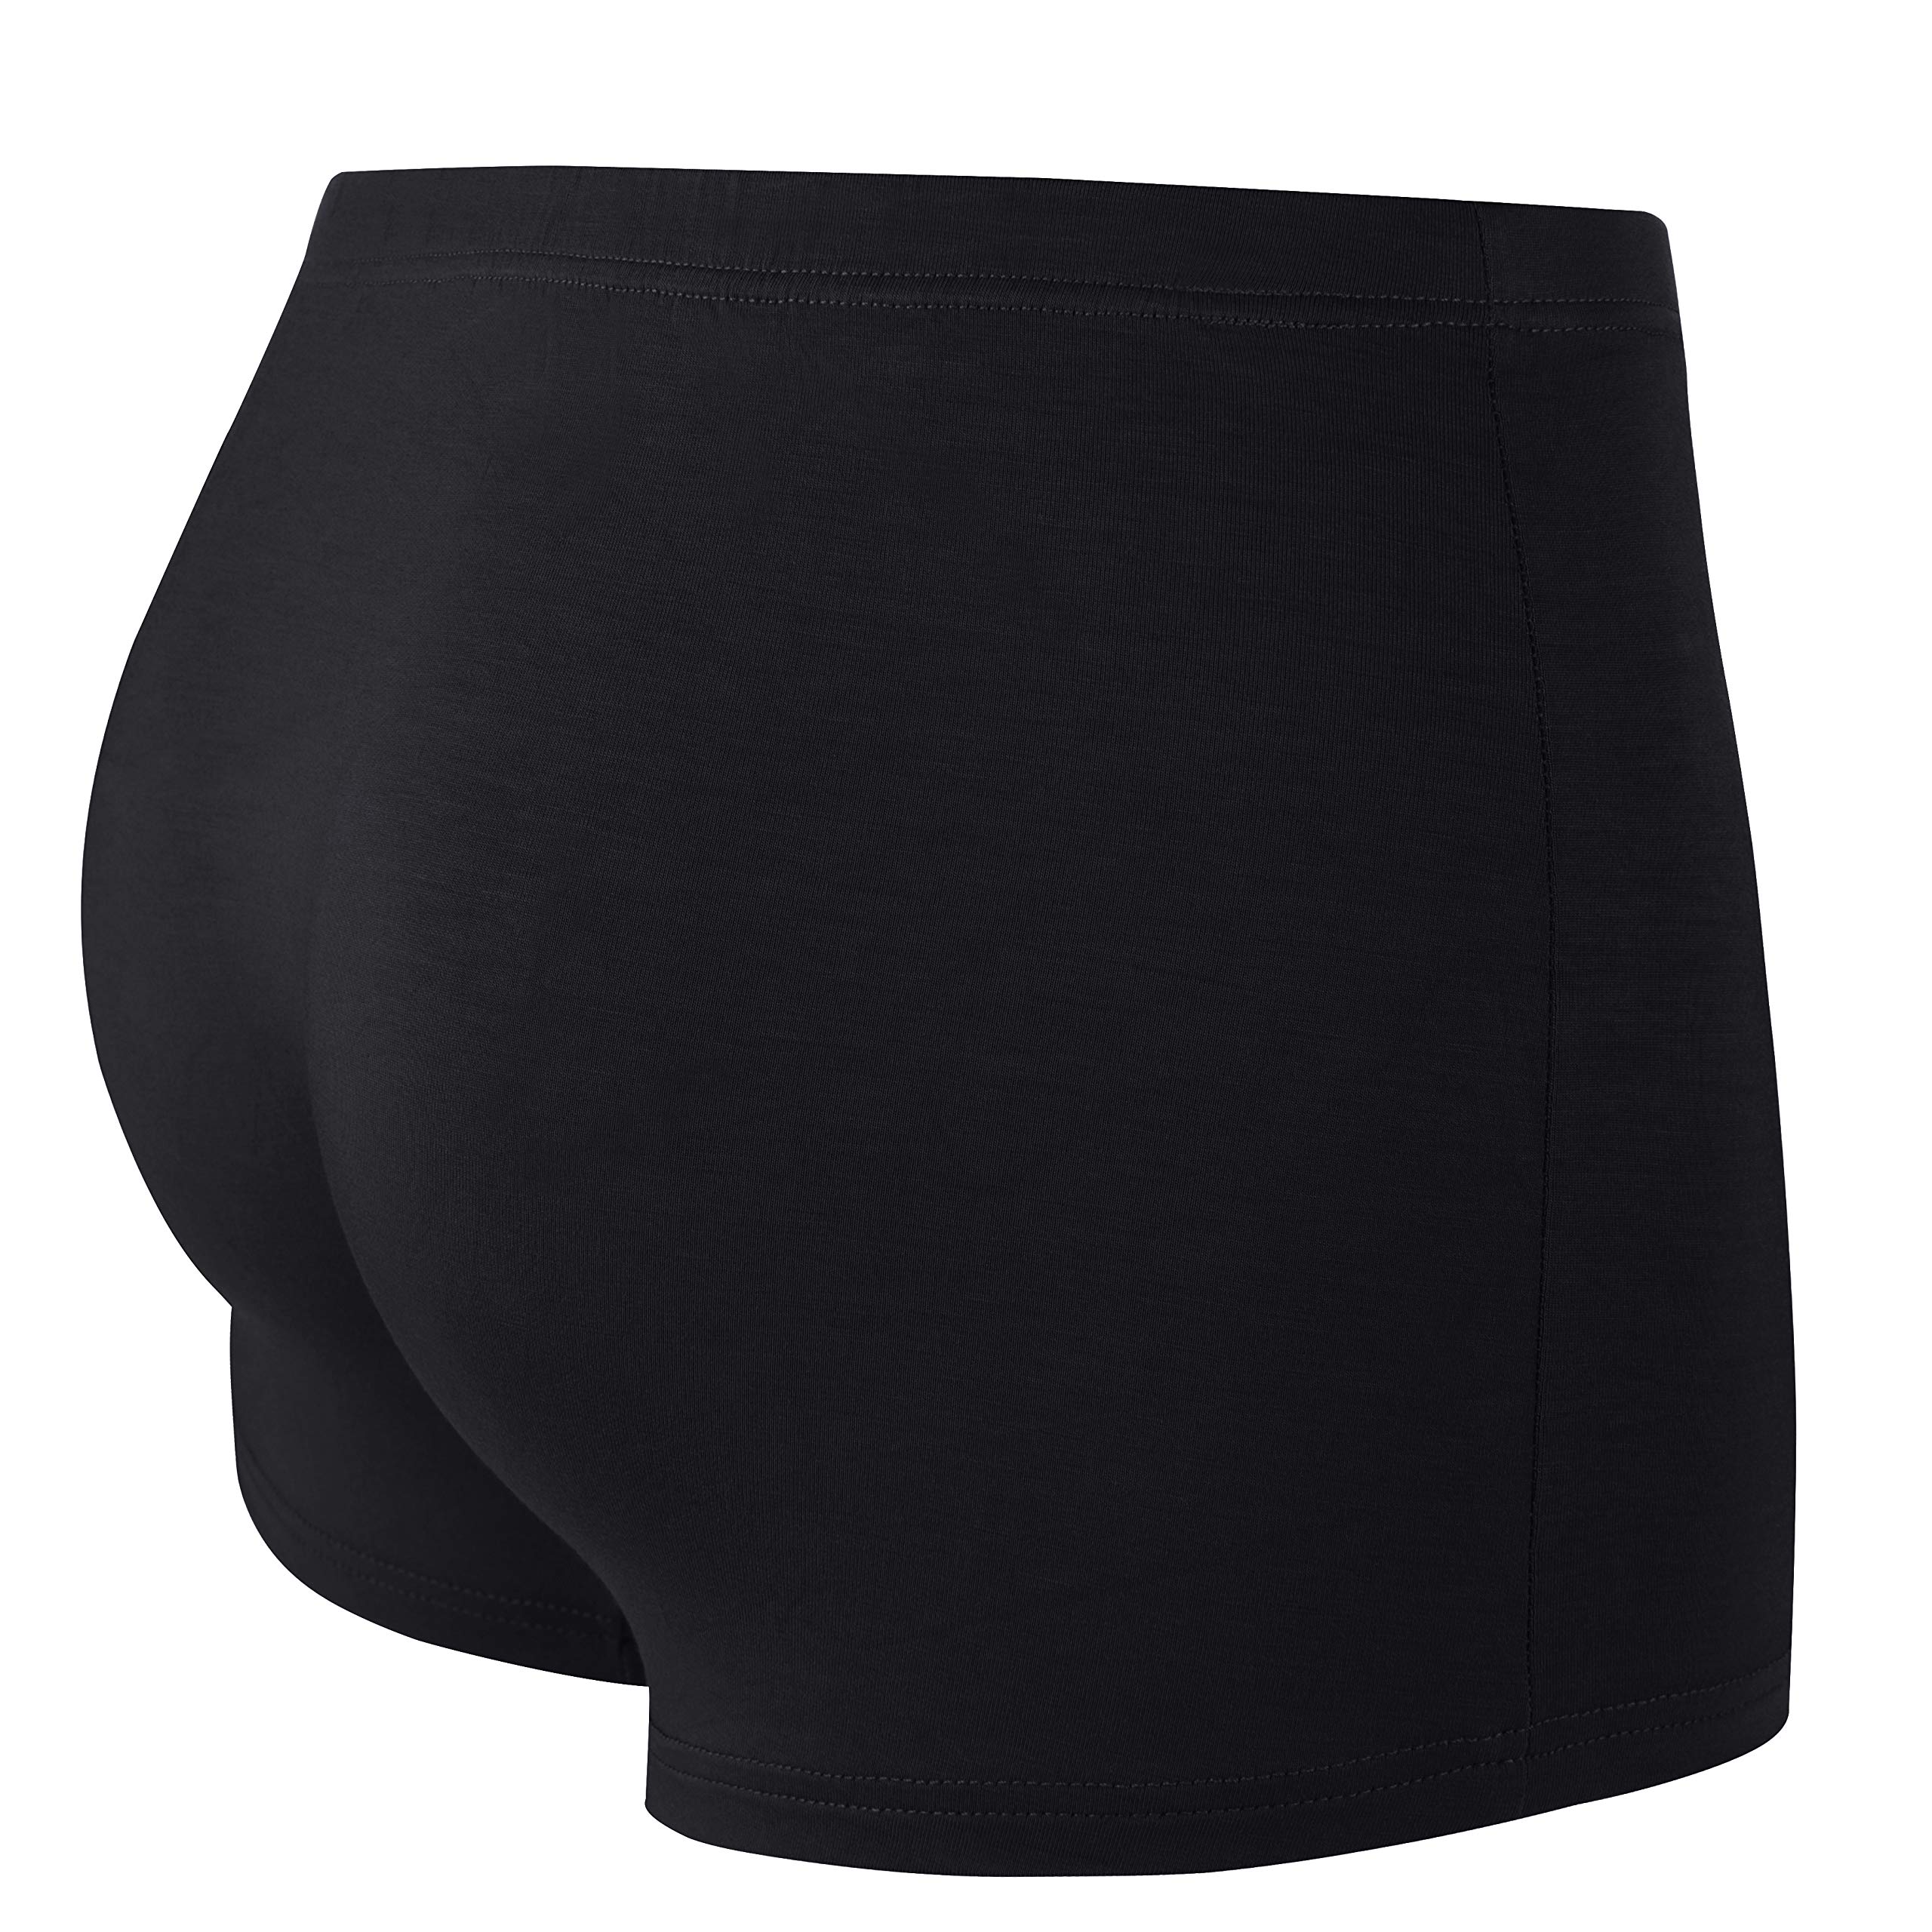 H&R Pocket Underwear for Men with Secret Hidden Pocket, Travel Stash Boxer Brief, Lager Size 2 Packs (Black)